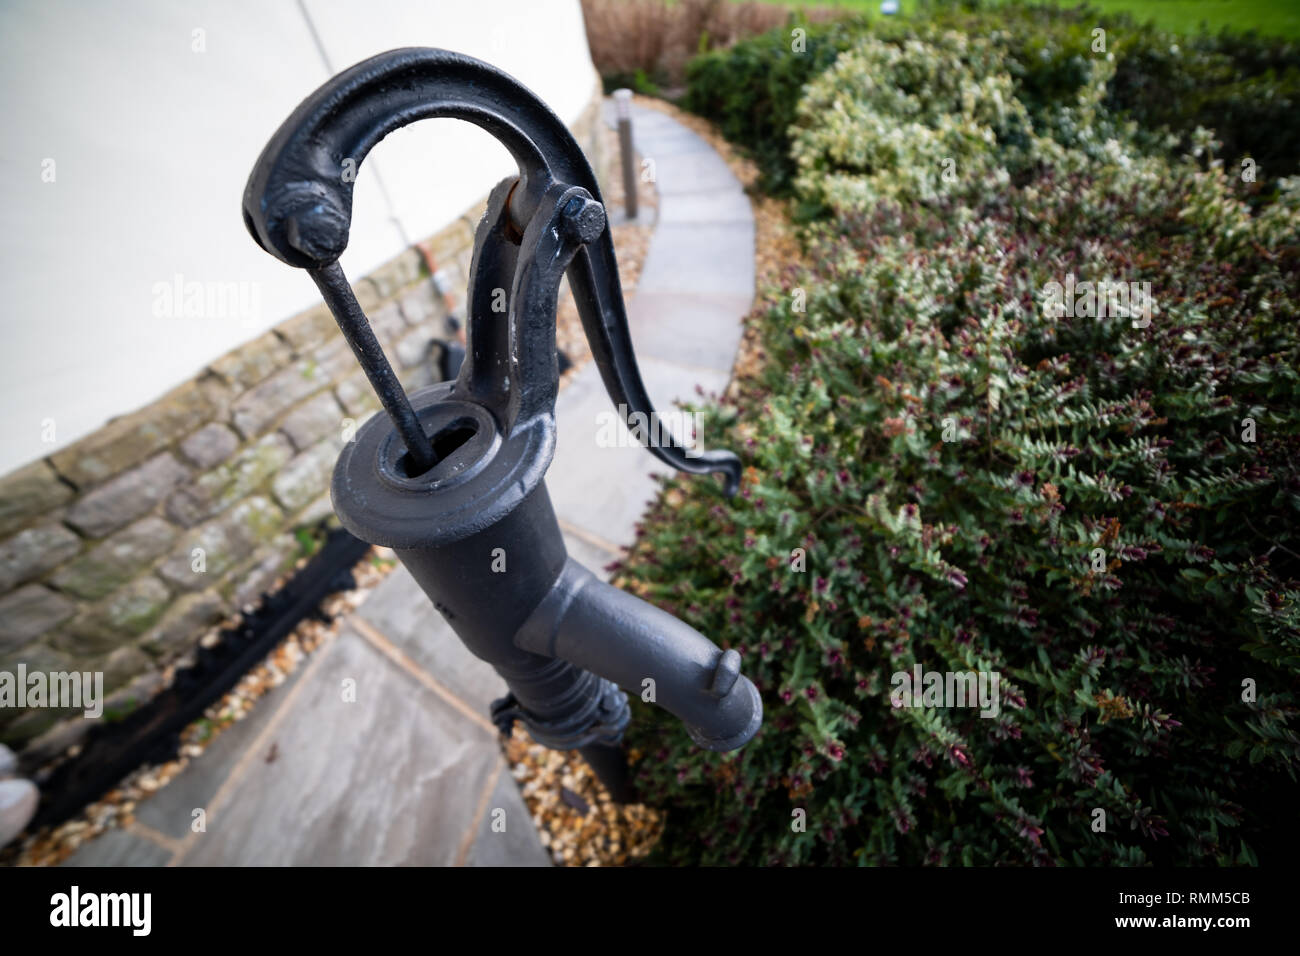 Hand Wasserpumpe - retro style (alte Wasserpumpe) in einem Waliser Haus  Garten Stockfotografie - Alamy